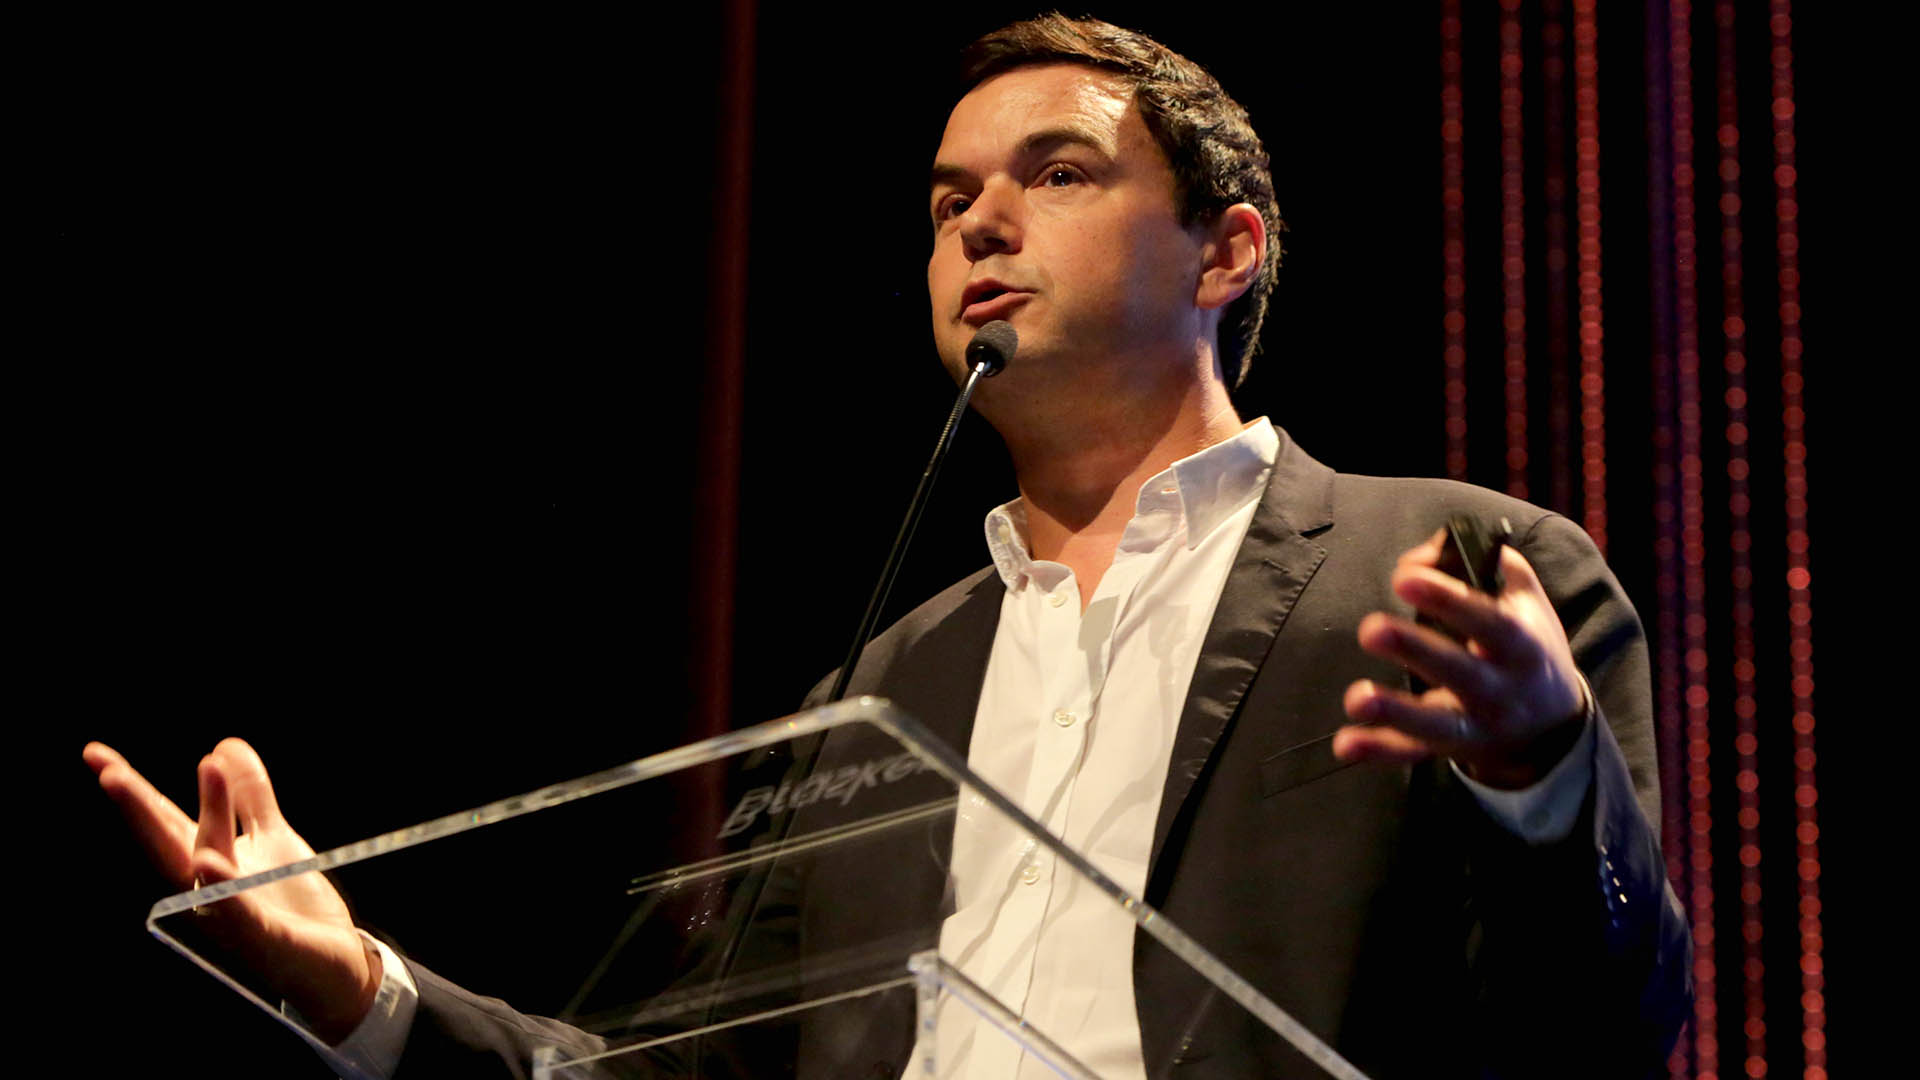 Thomas Piketty, economista francés autor de “El Capital en el siglo XXI“ y “Capital e Ideología“, entre otras obras